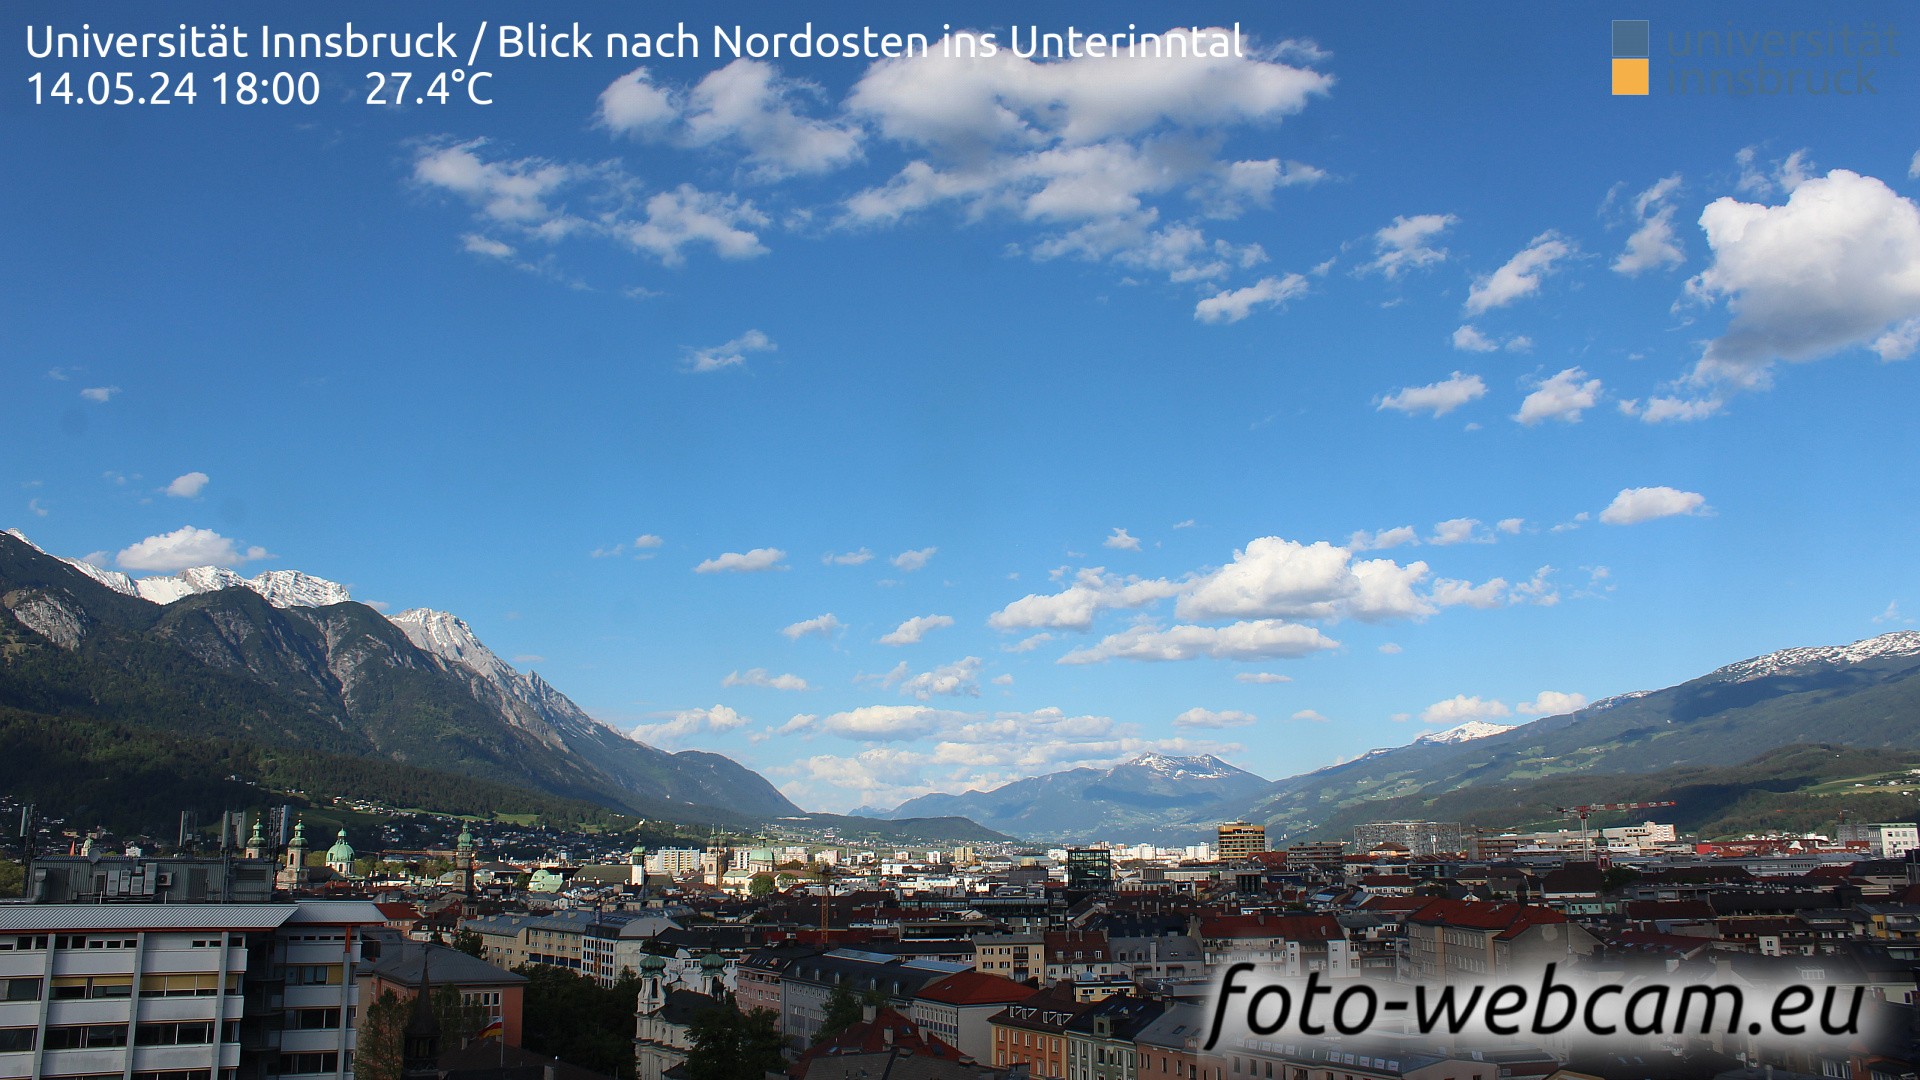 Innsbruck Thu. 18:06